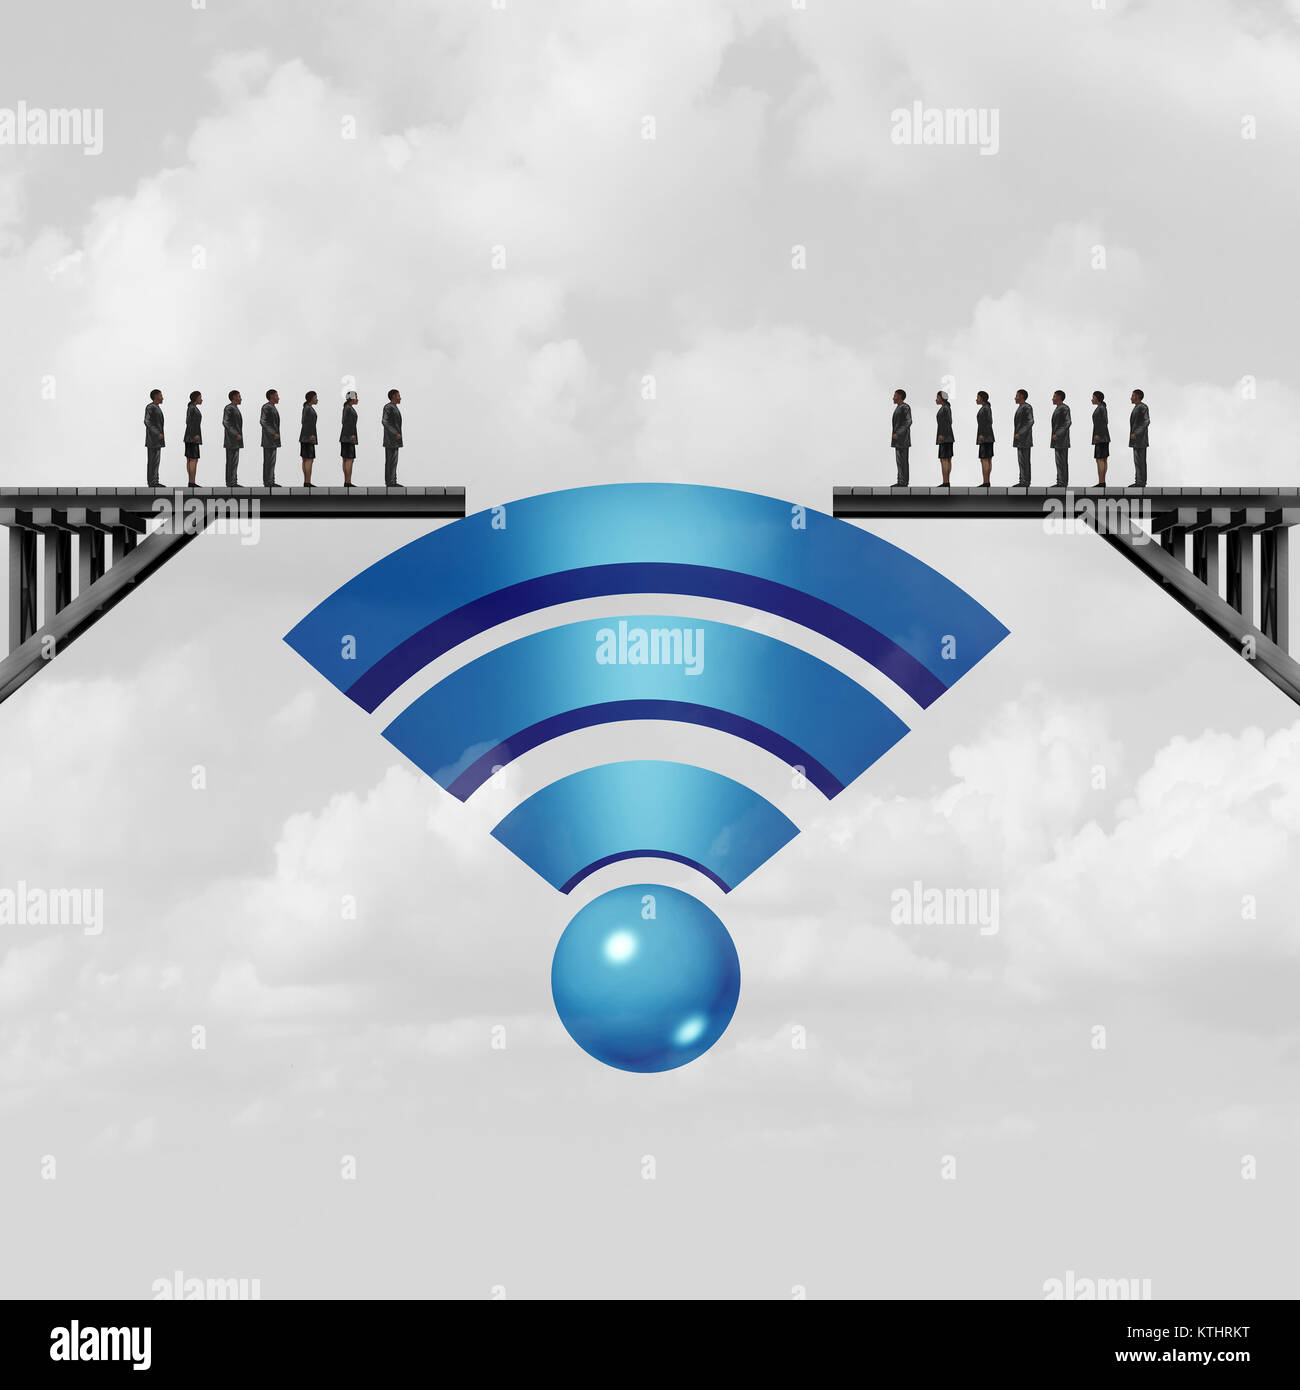 La connectivité Internet et la connexion web concept ou solution en ligne comme un symbole symbole wifi pour se connecter à combler l'écart de la société. Banque D'Images